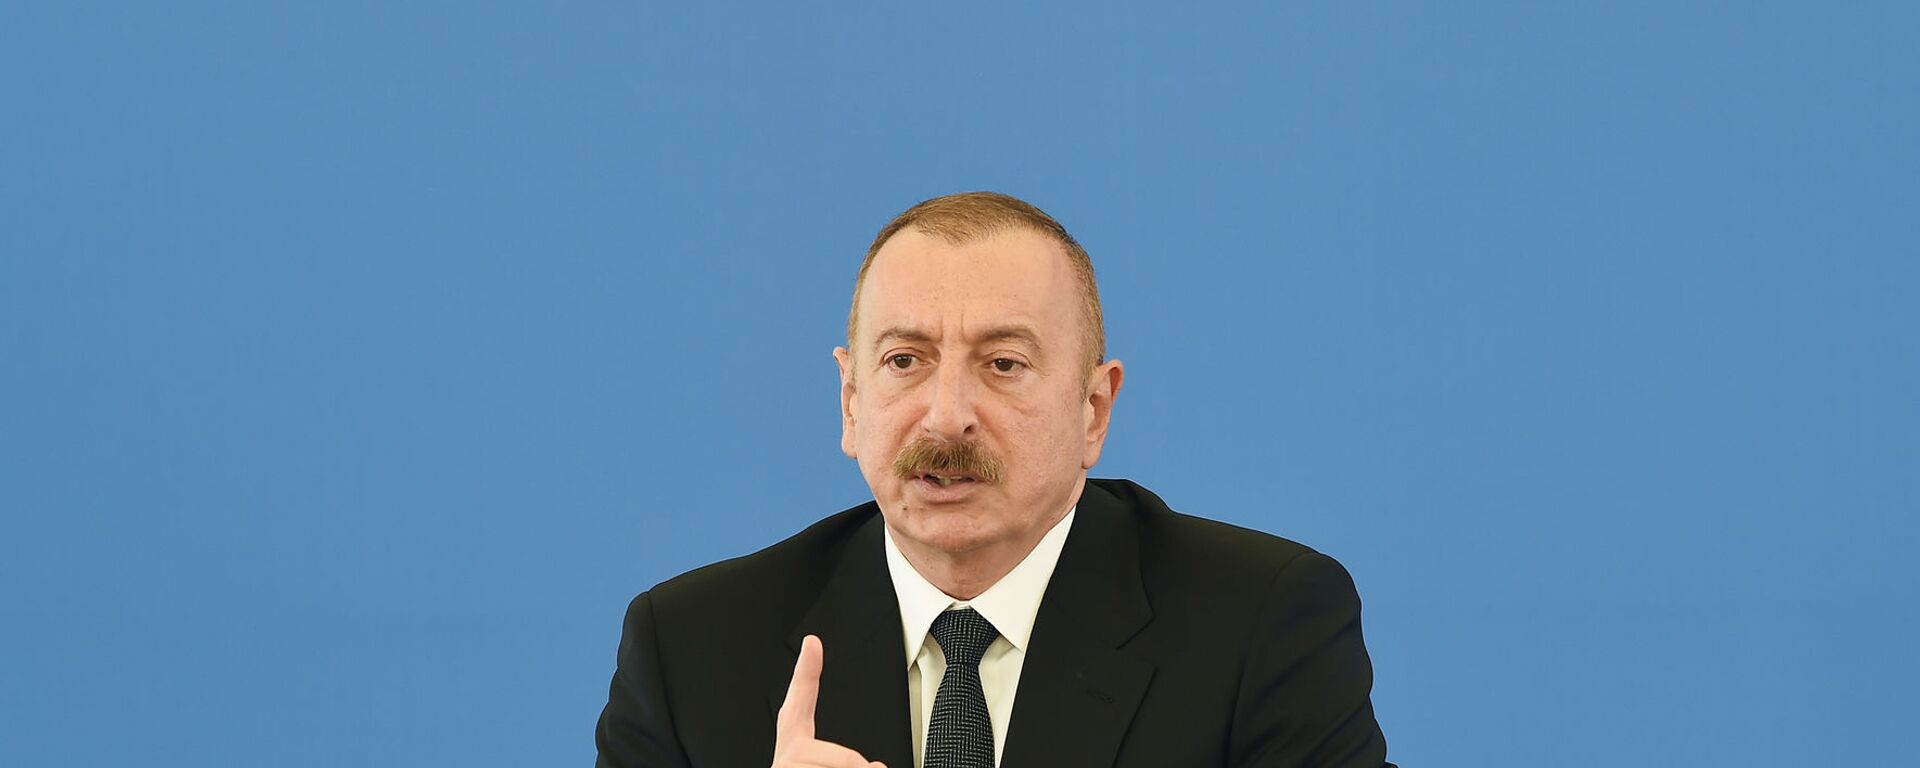 Президент Ильхам Алиев, фото из архива  - Sputnik Azərbaycan, 1920, 01.02.2021